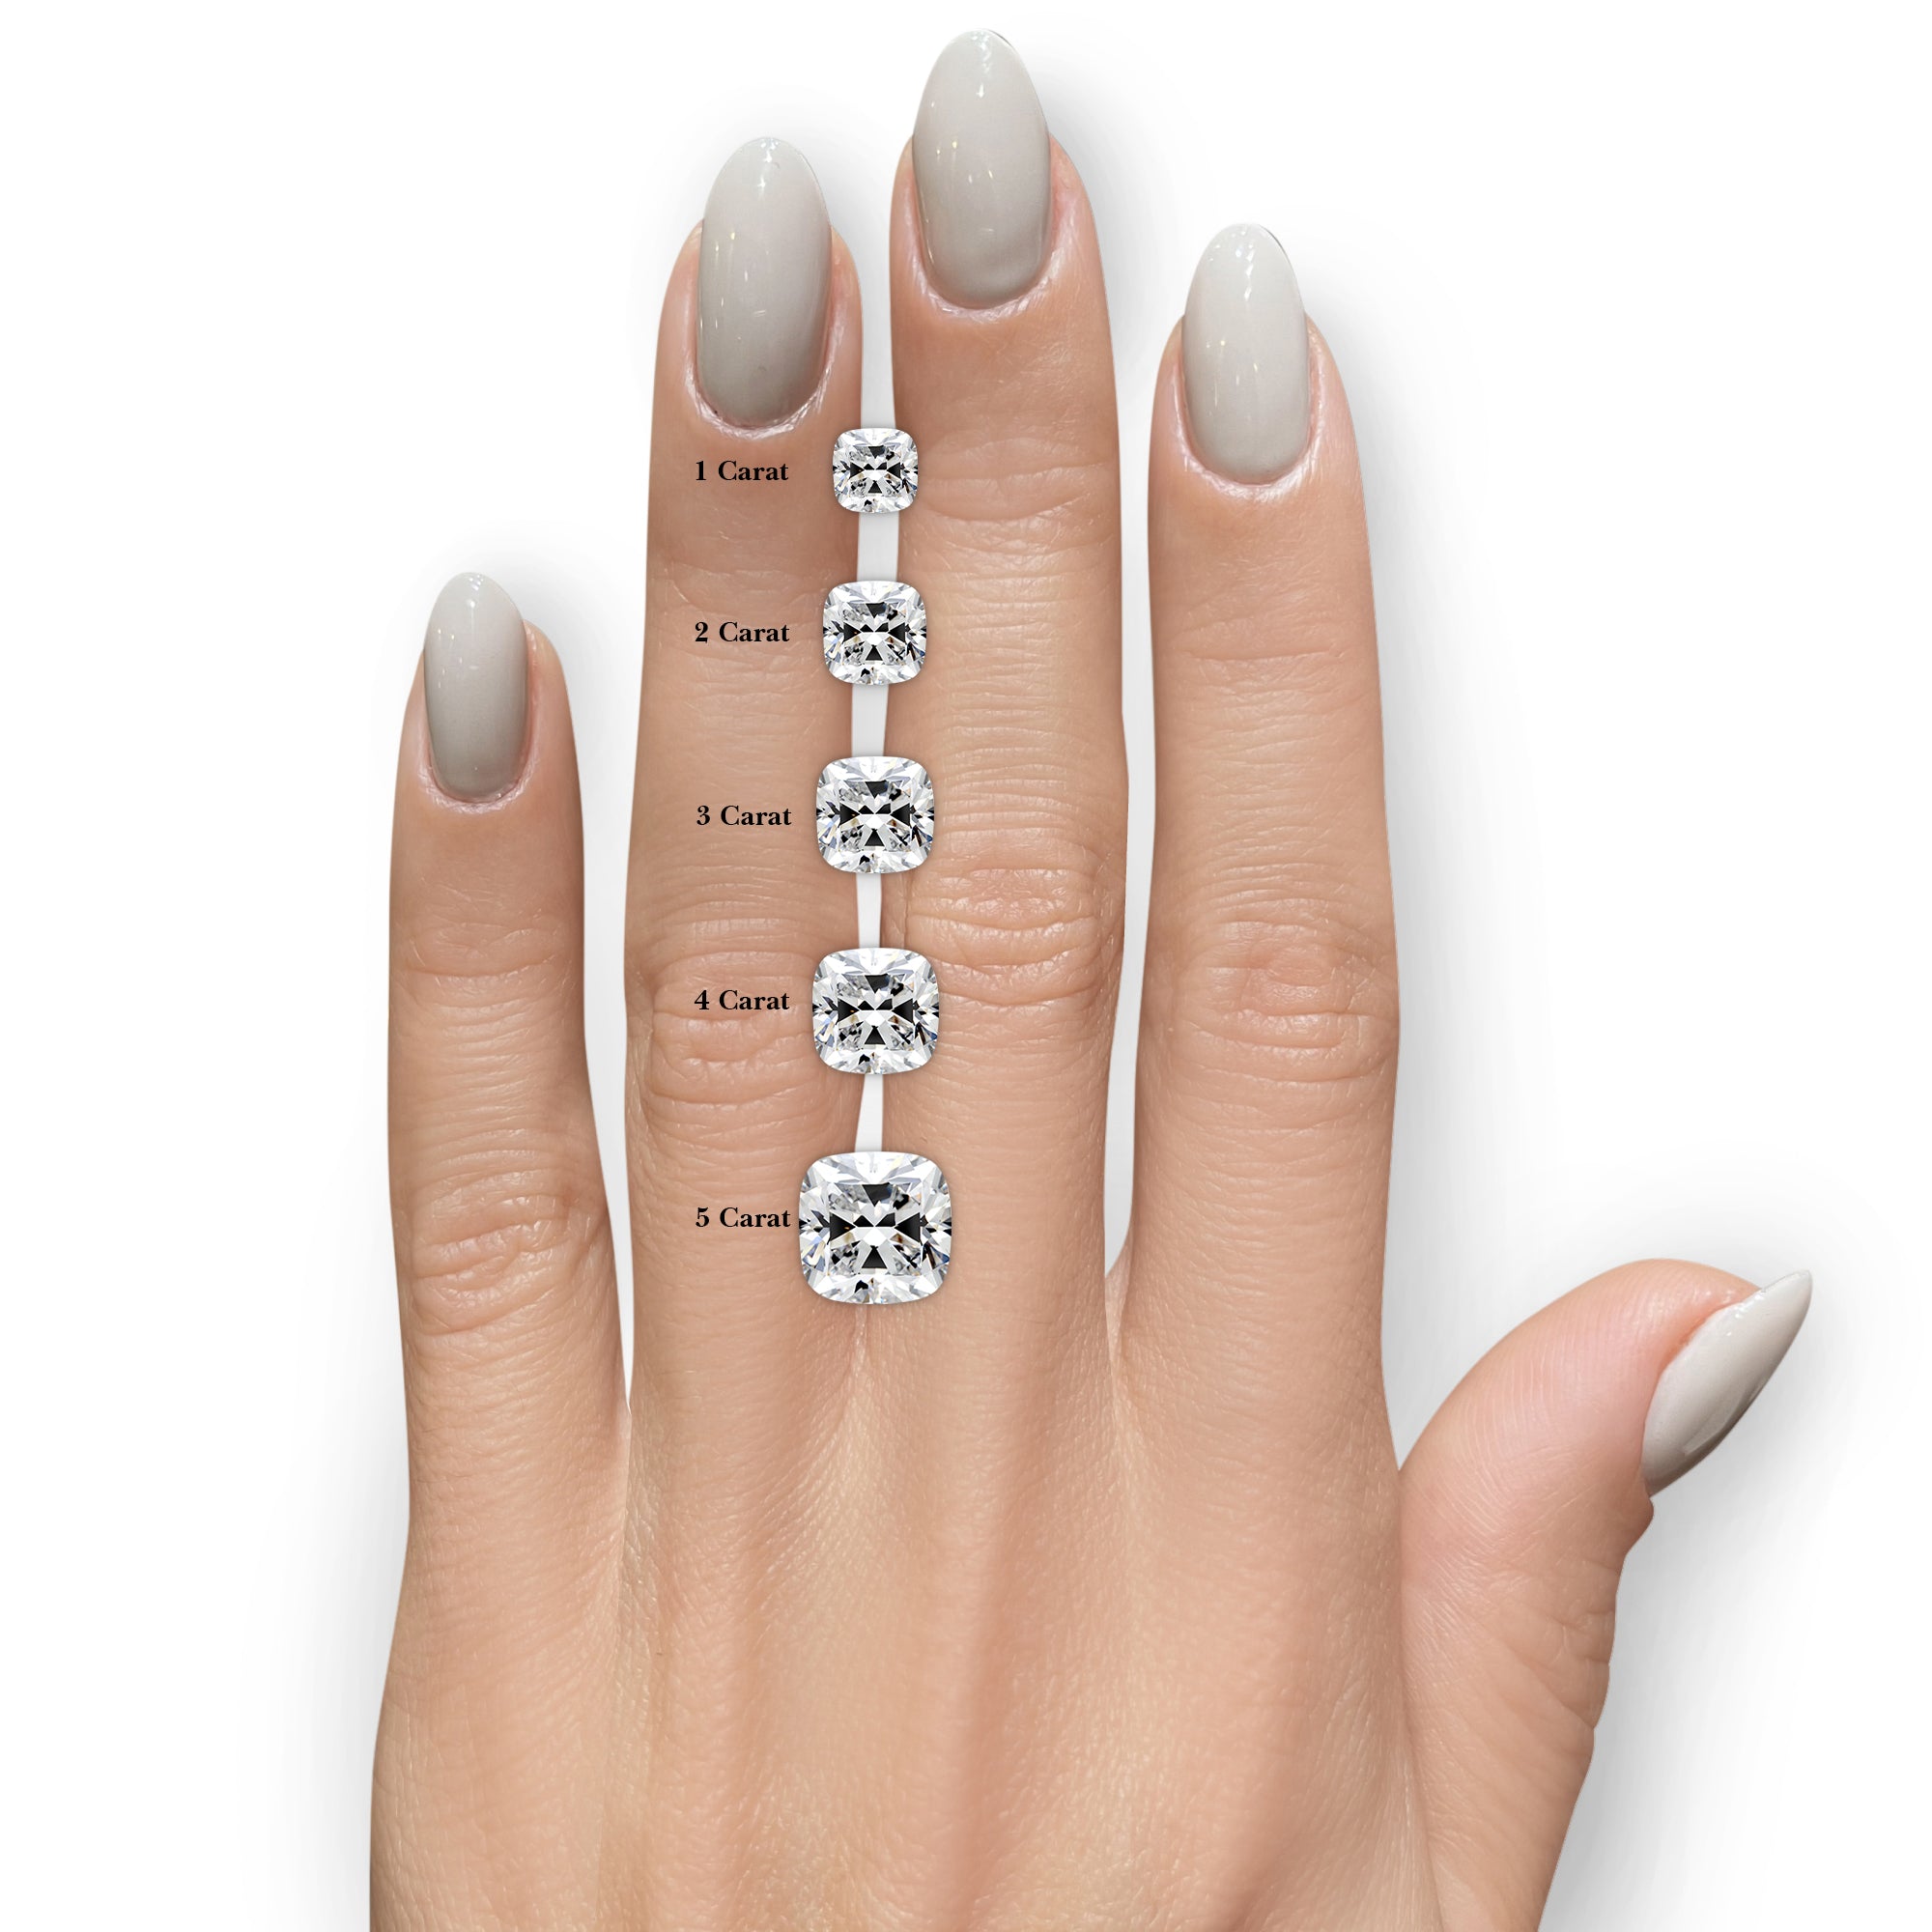 Piper Diamond Engagement Ring - 18K White Gold